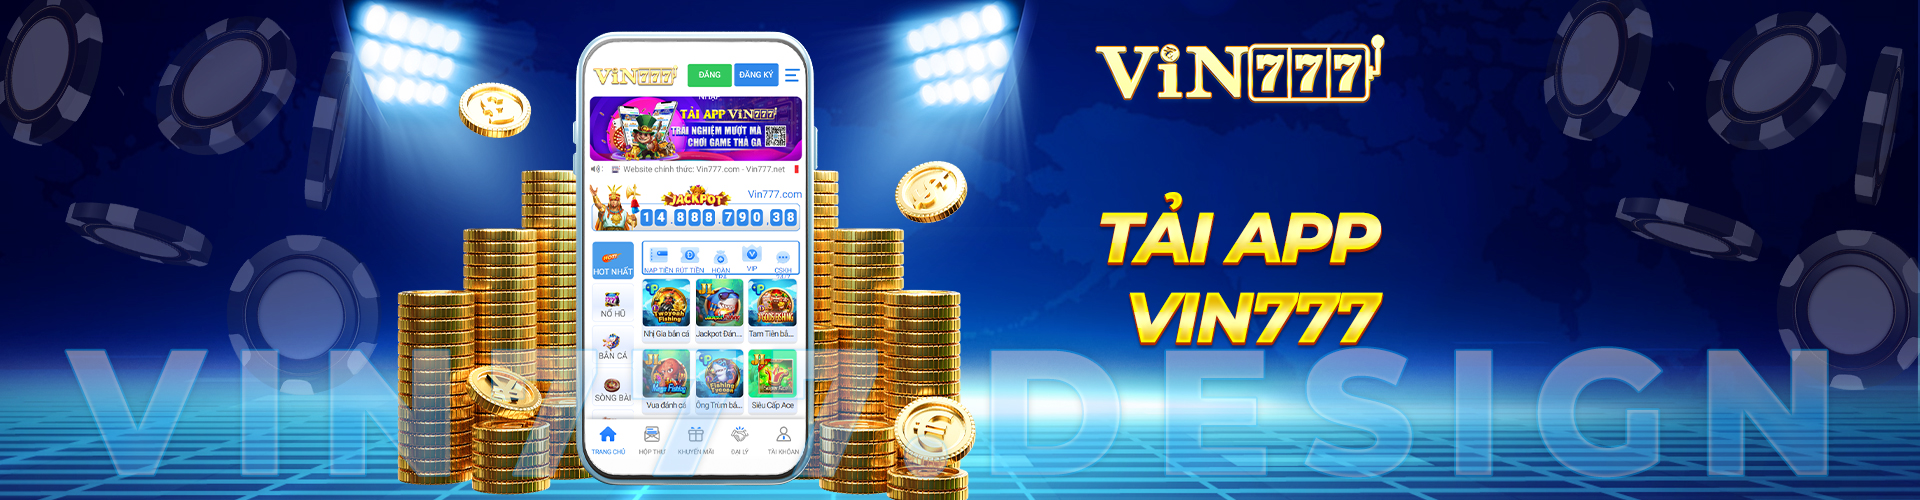 Banner Tải App Vin777